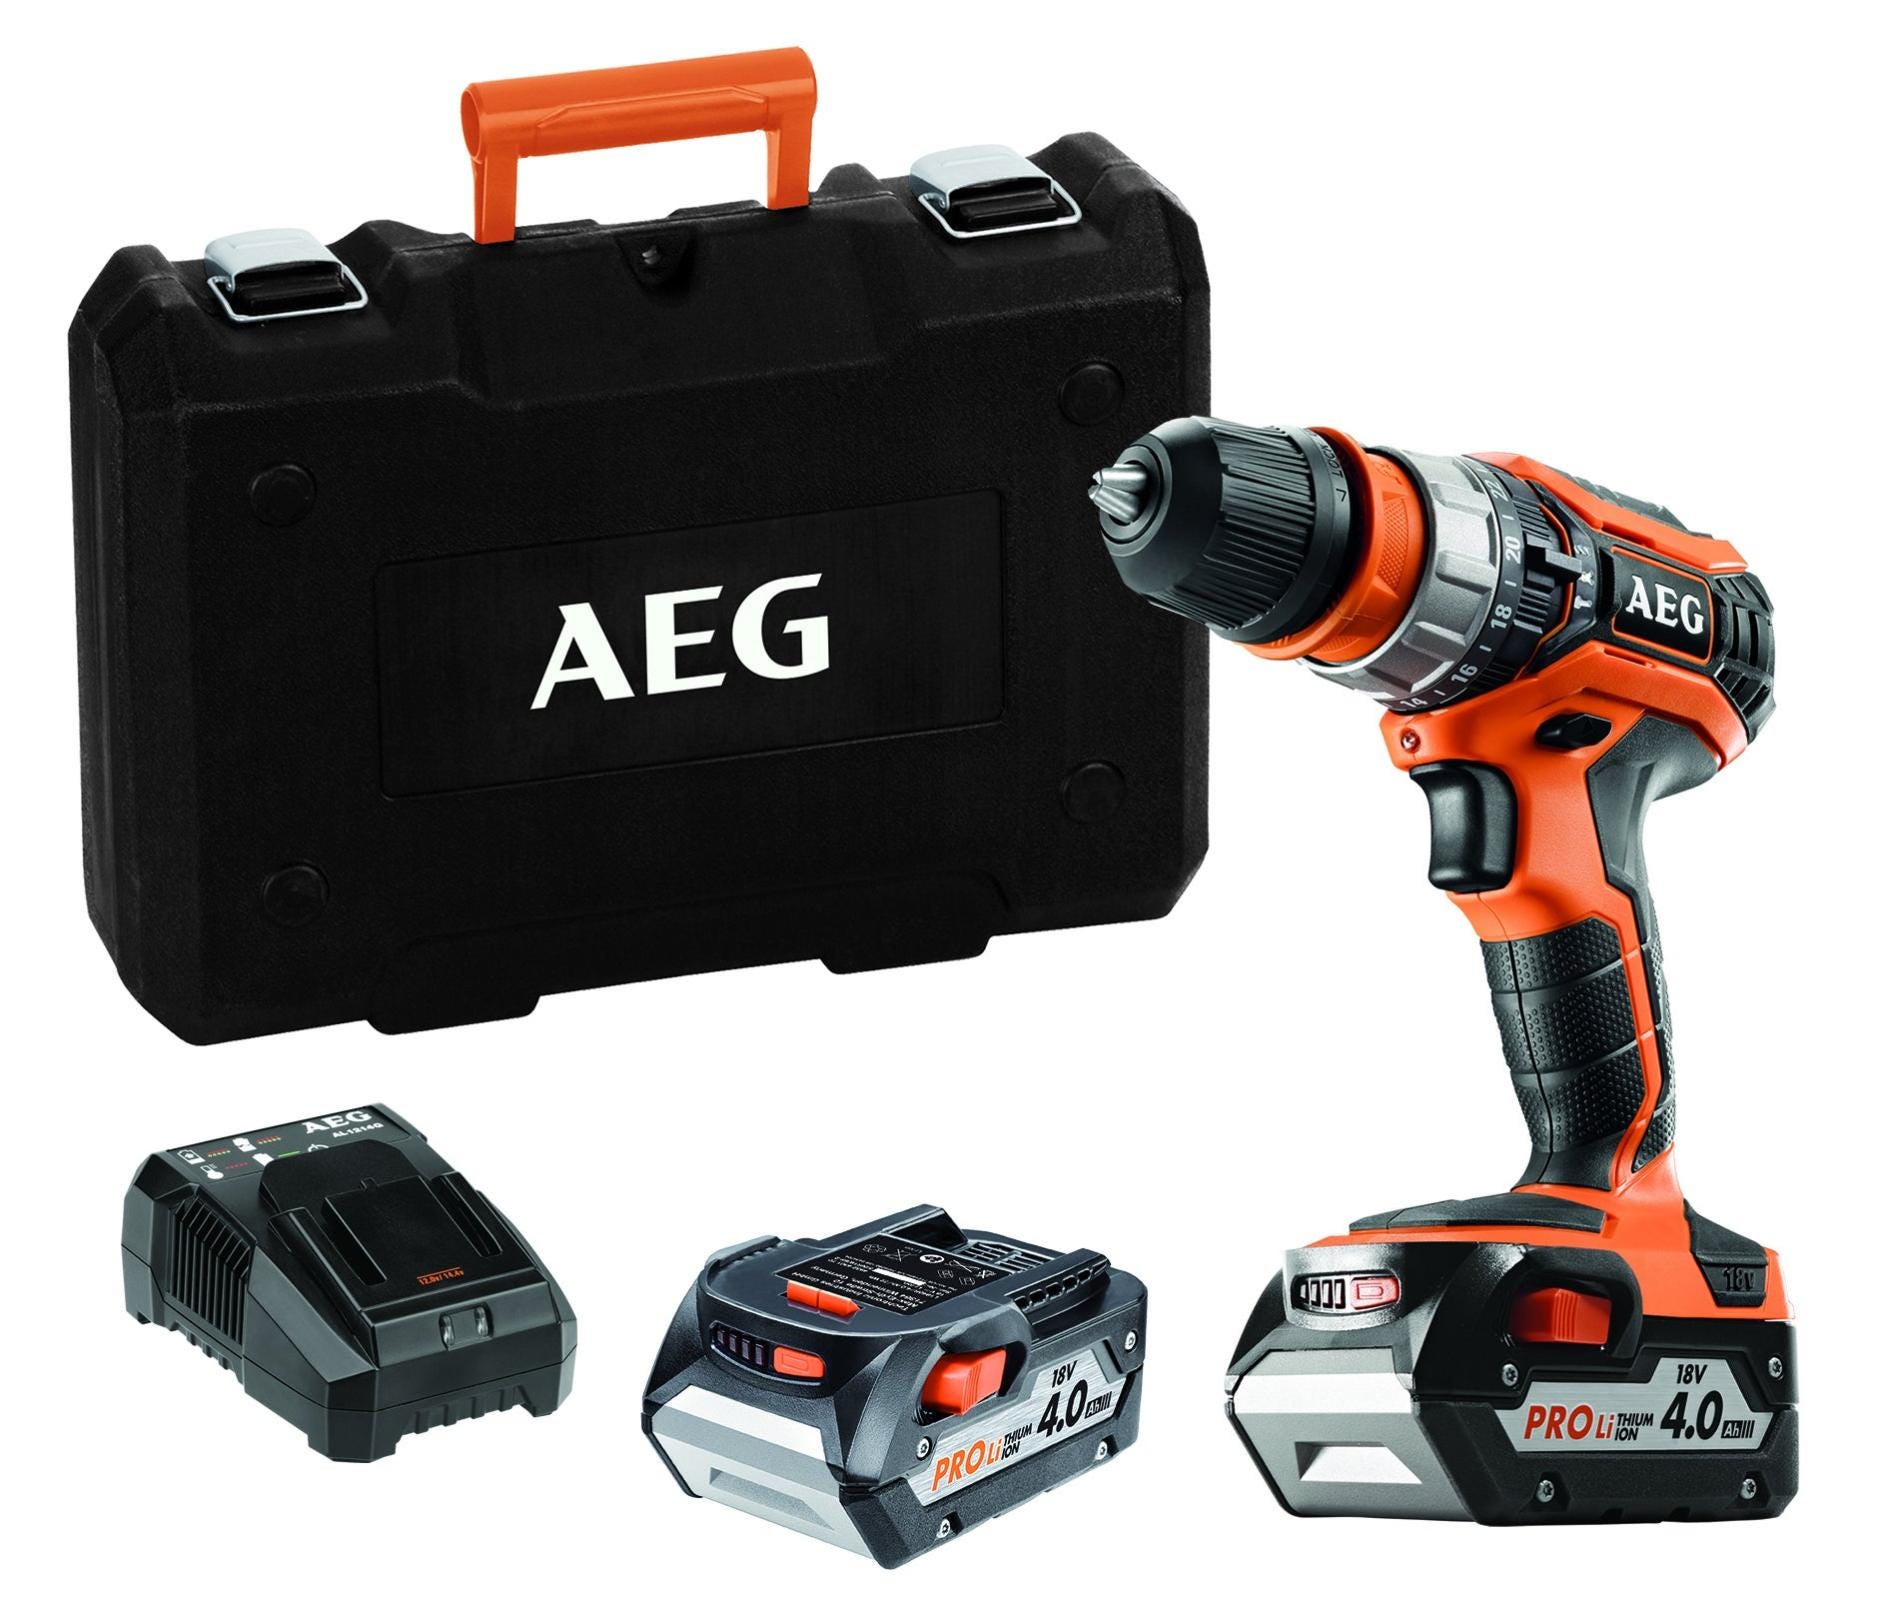 AEG - Accessoires outils perceuse & visseuse : forets, embouts visseuse  etc. - AEG Powertools